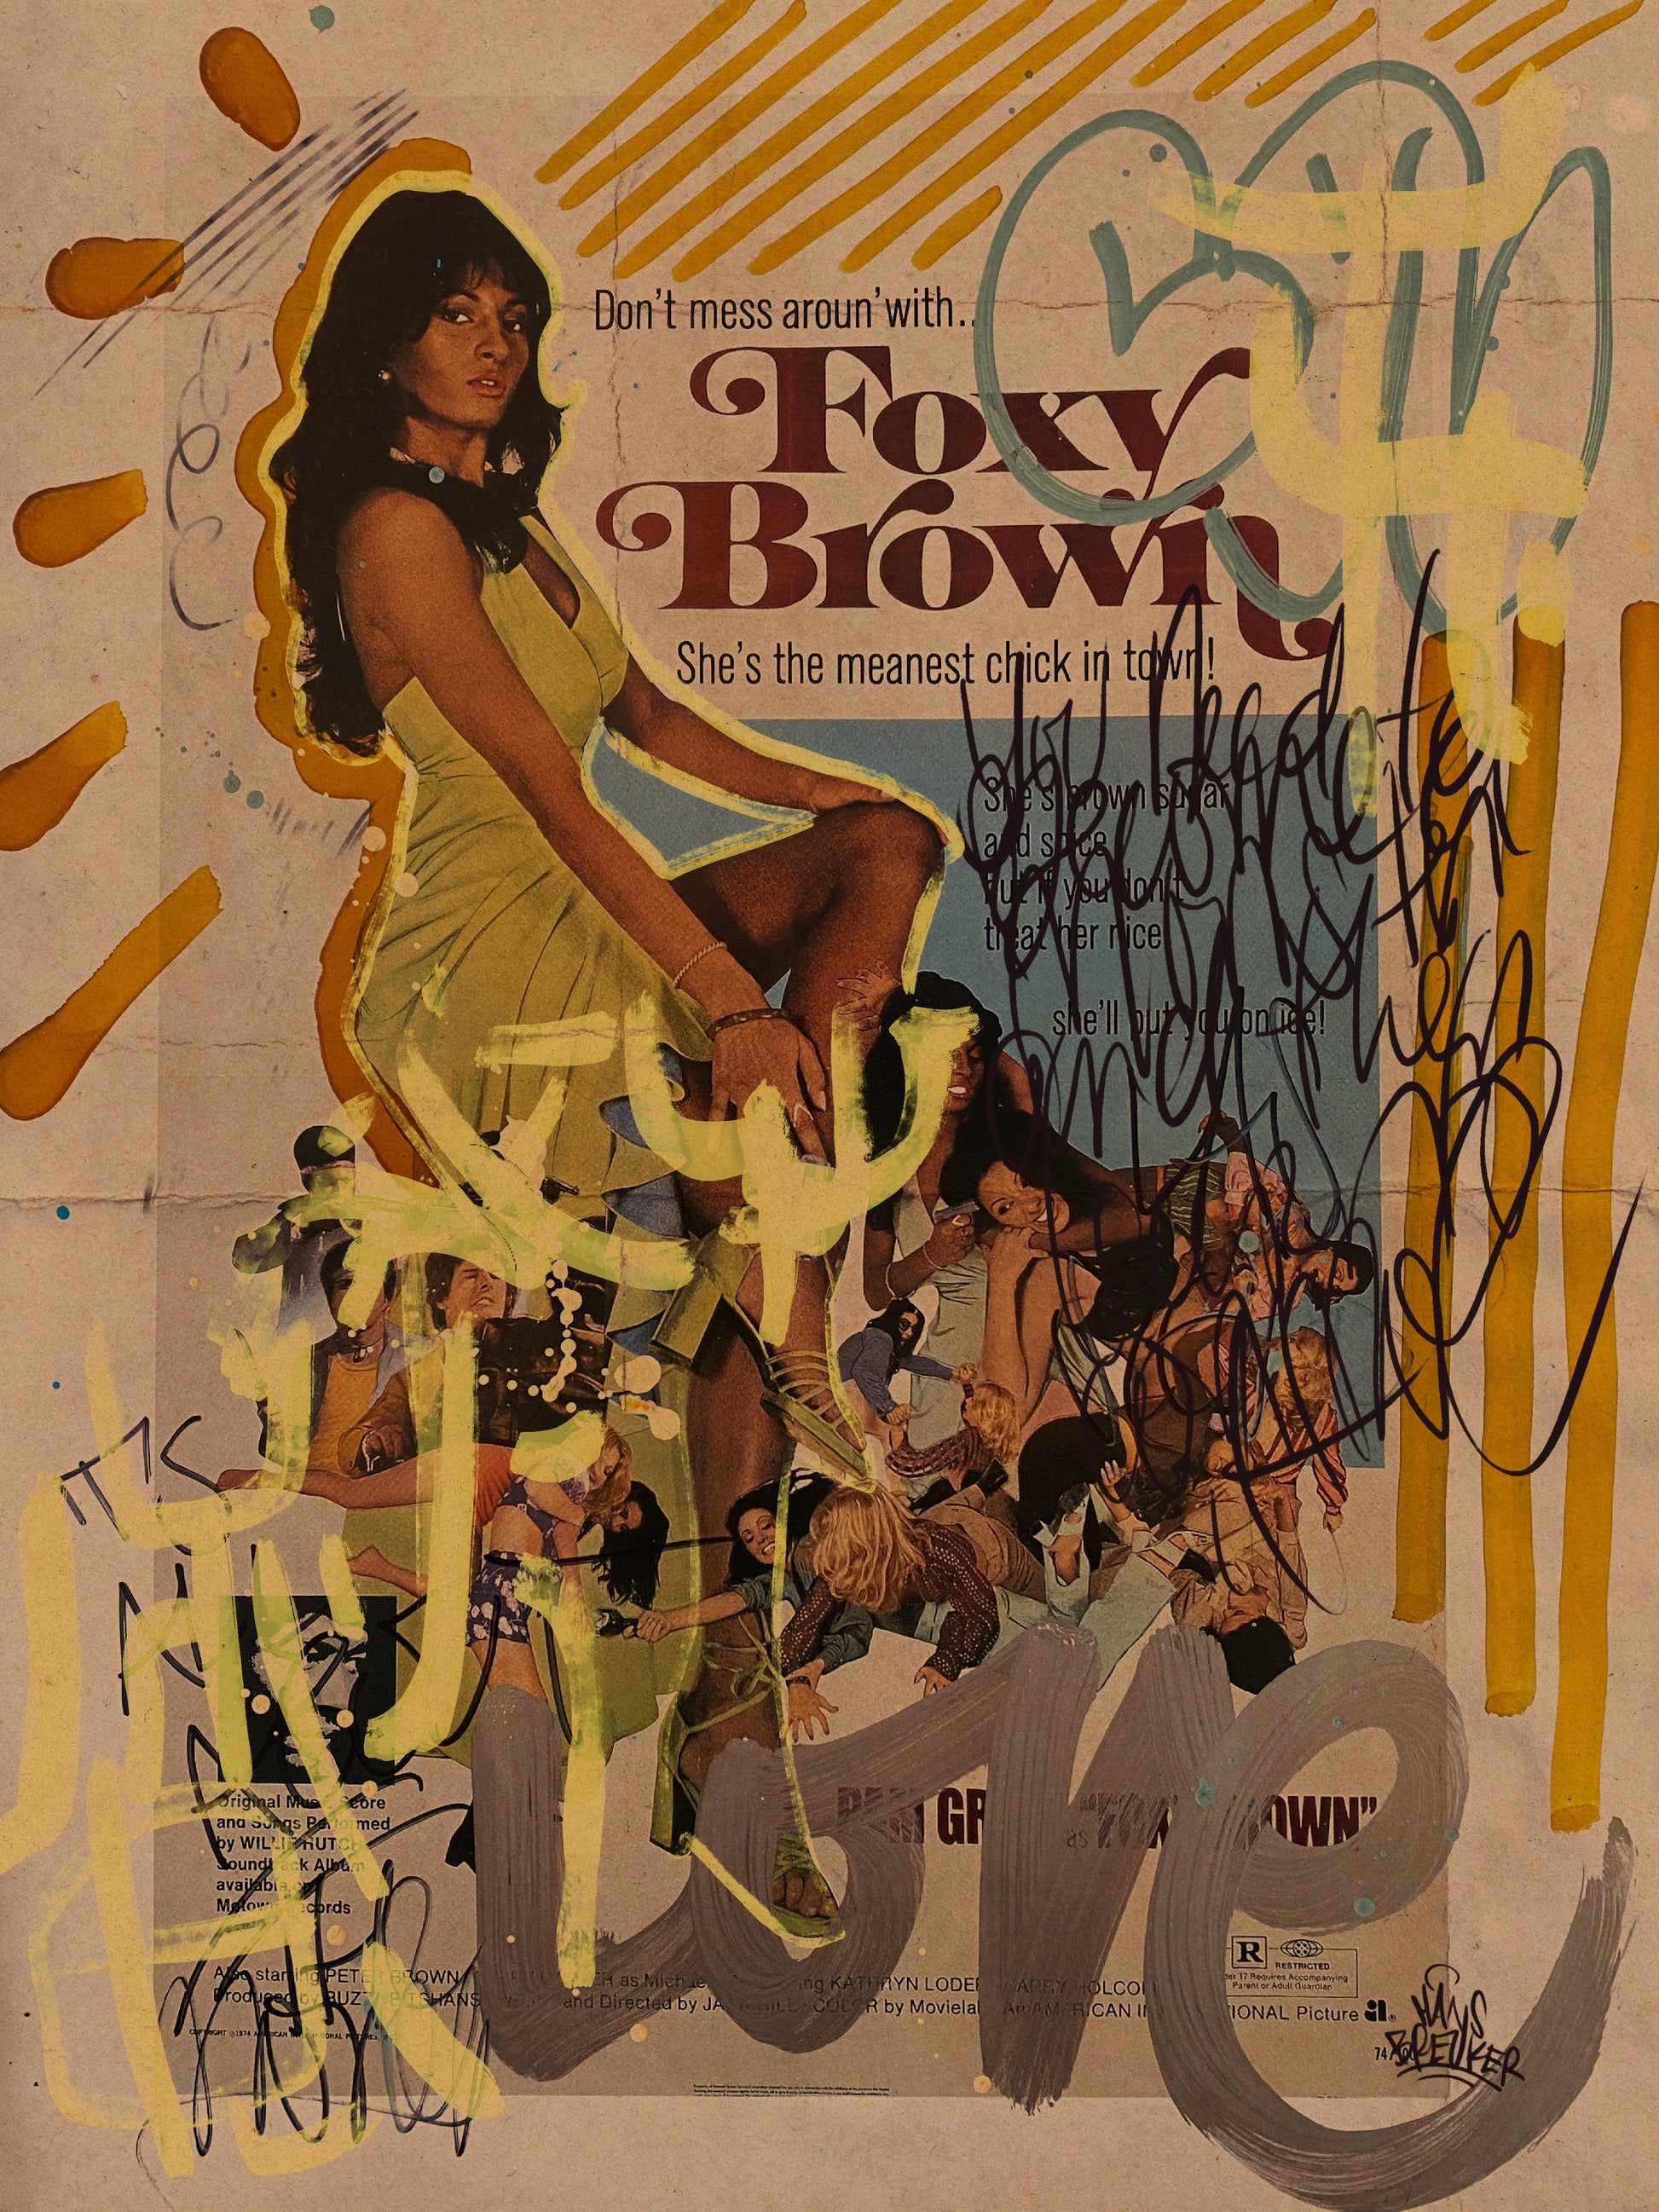 Foxy times for foxy people let's make some sweet lovin - Hans Breuker